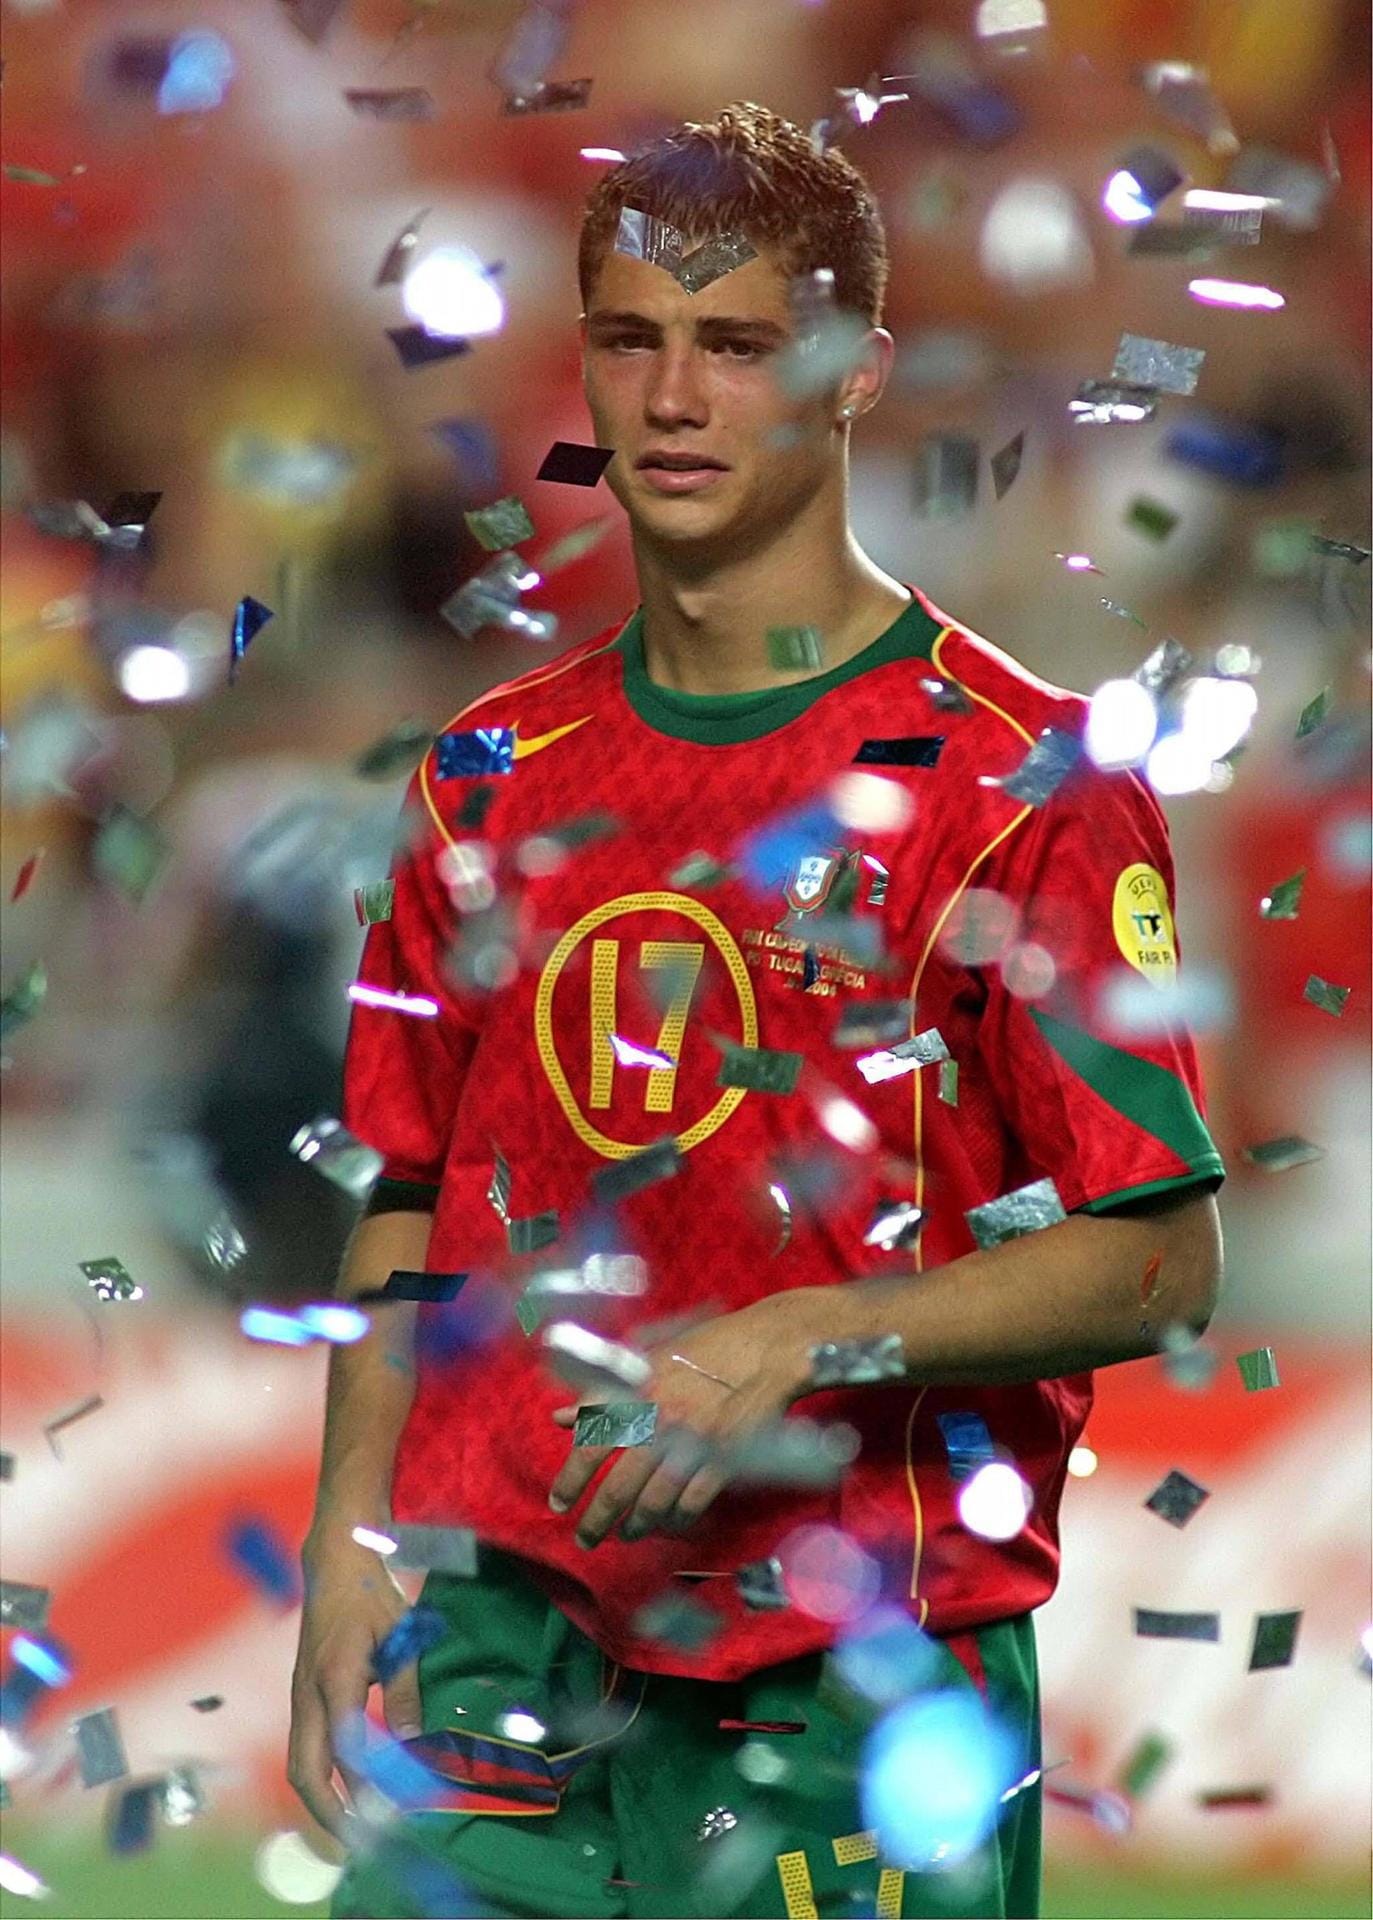 Der traurige Stürmer im Glitterregen bei der Siegerehrung: 2004 erlebte der Fußballer im eigenen Land eine bittere Niederlage. Portugal verlor im EM-Finale gegen Griechenland mit 1:2.